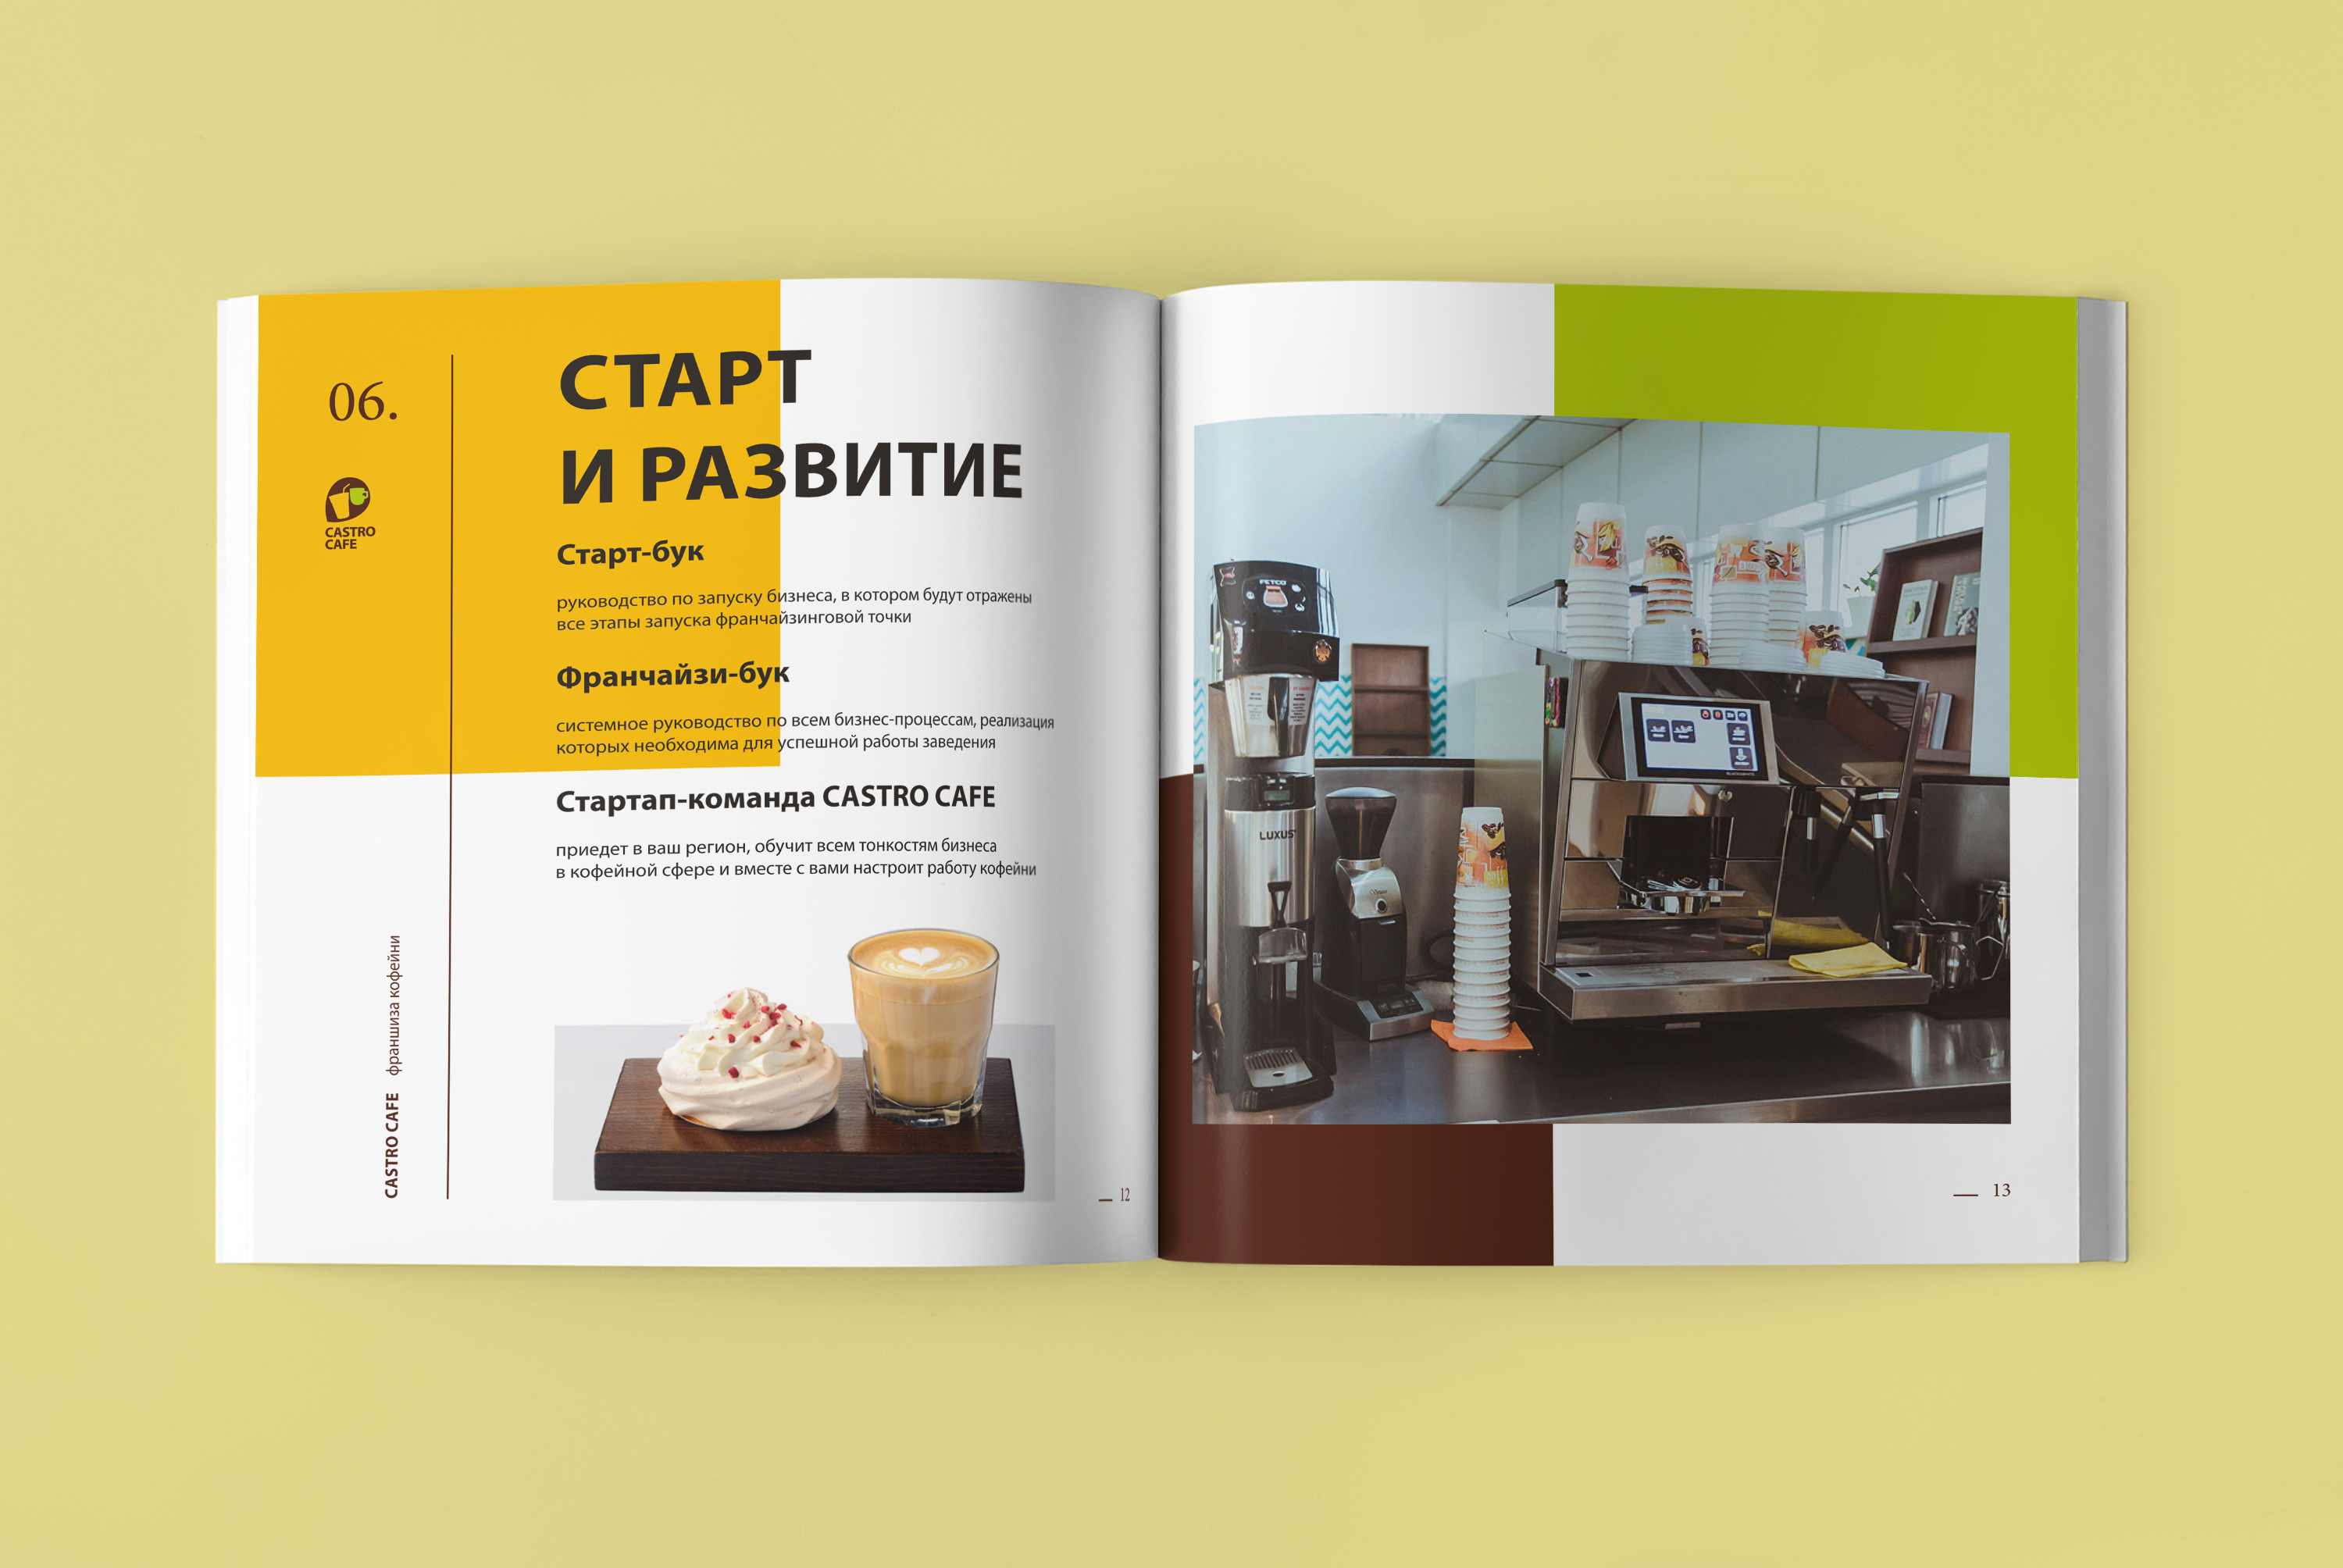 “Castro cafe” (Иркутск) – сеть уютных кофеен.